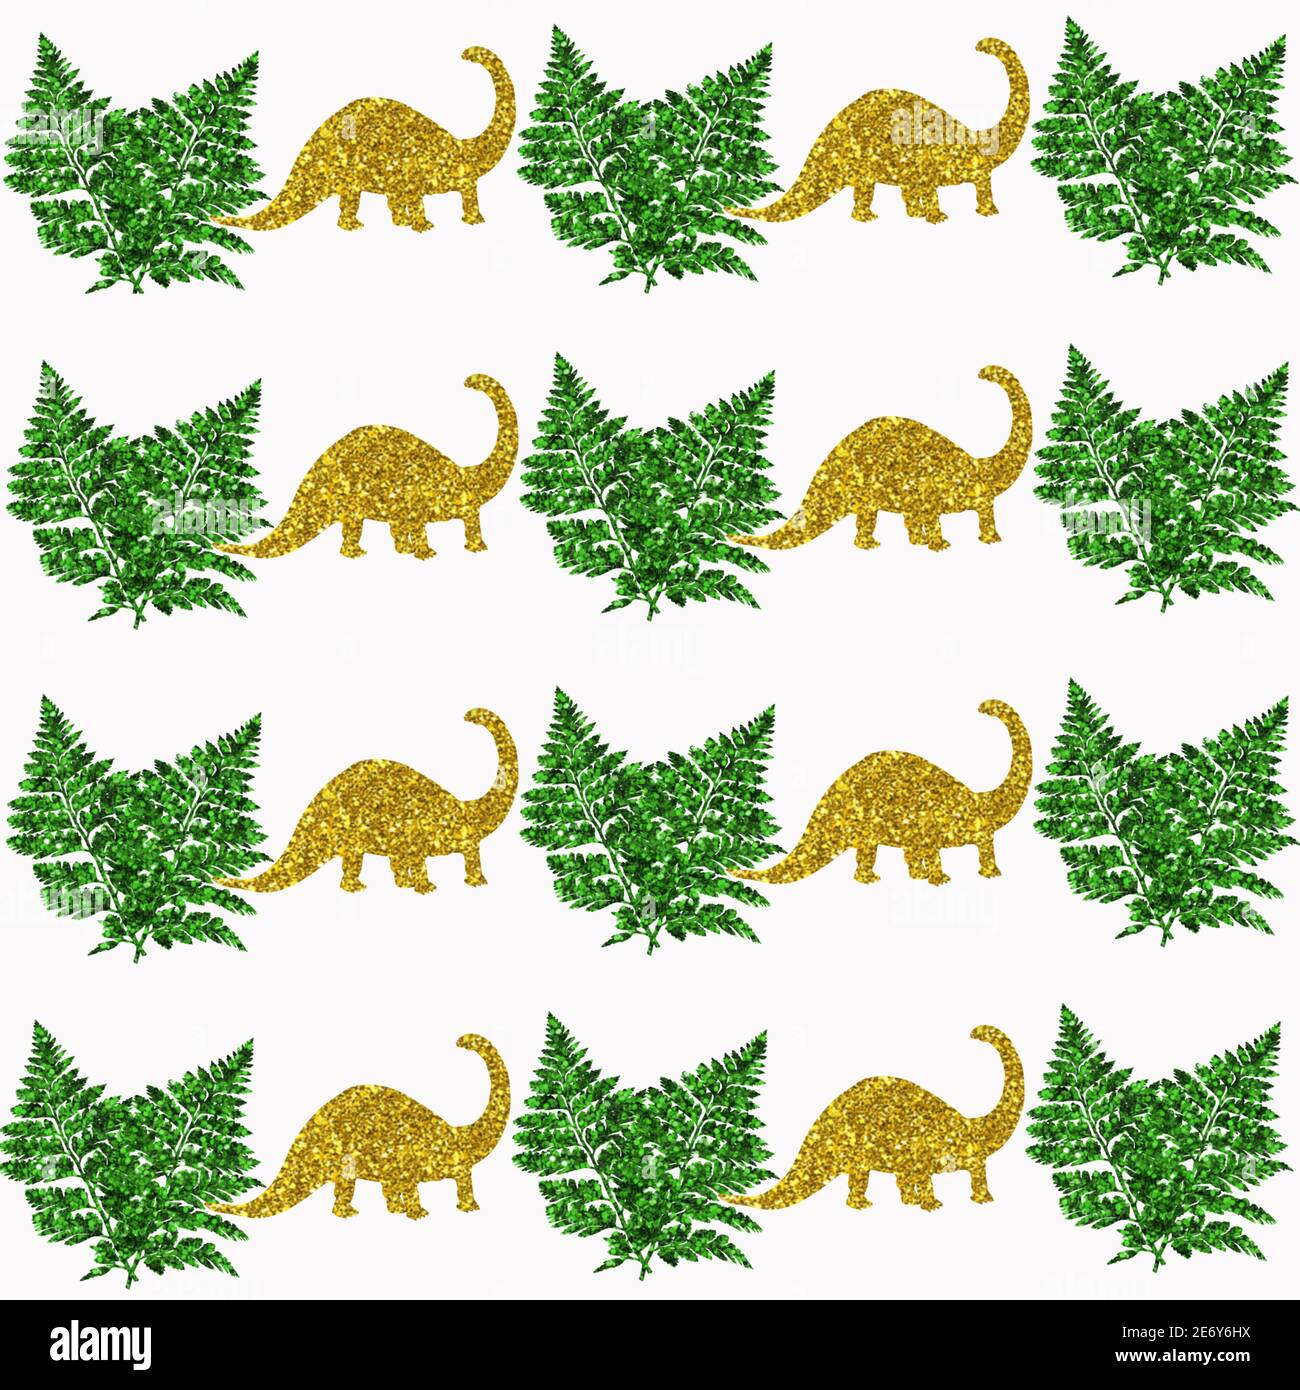 Illustrazione di dinosauri dorati e motivi di foglia verde su un sfondo bianco Foto Stock